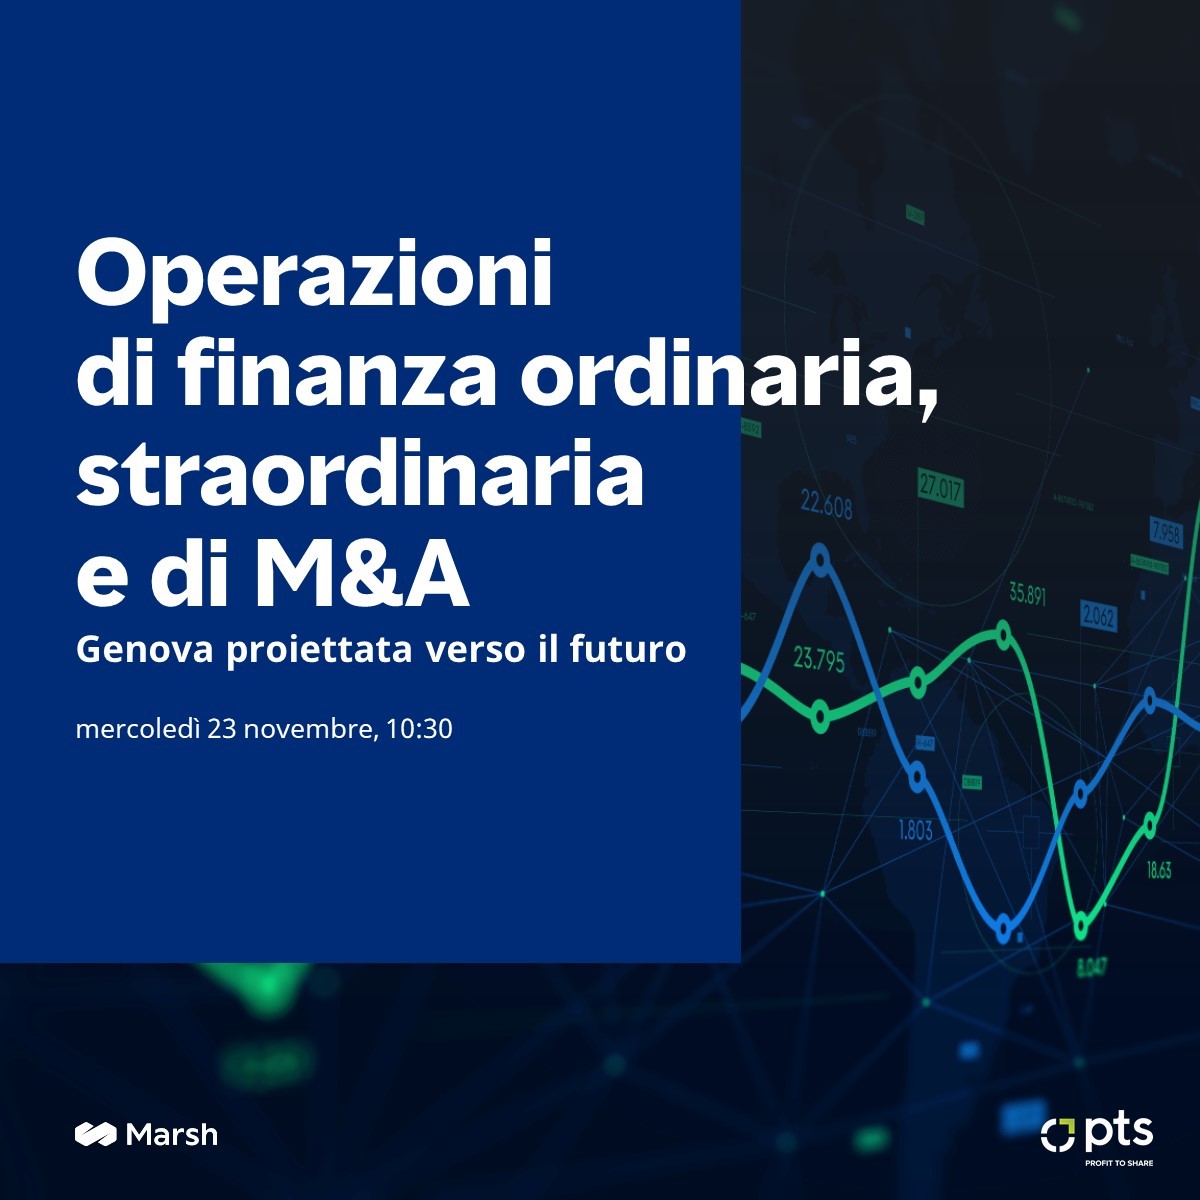 Evento: operazioni di finanza ordinaria, straordinaria e M&A a Genova